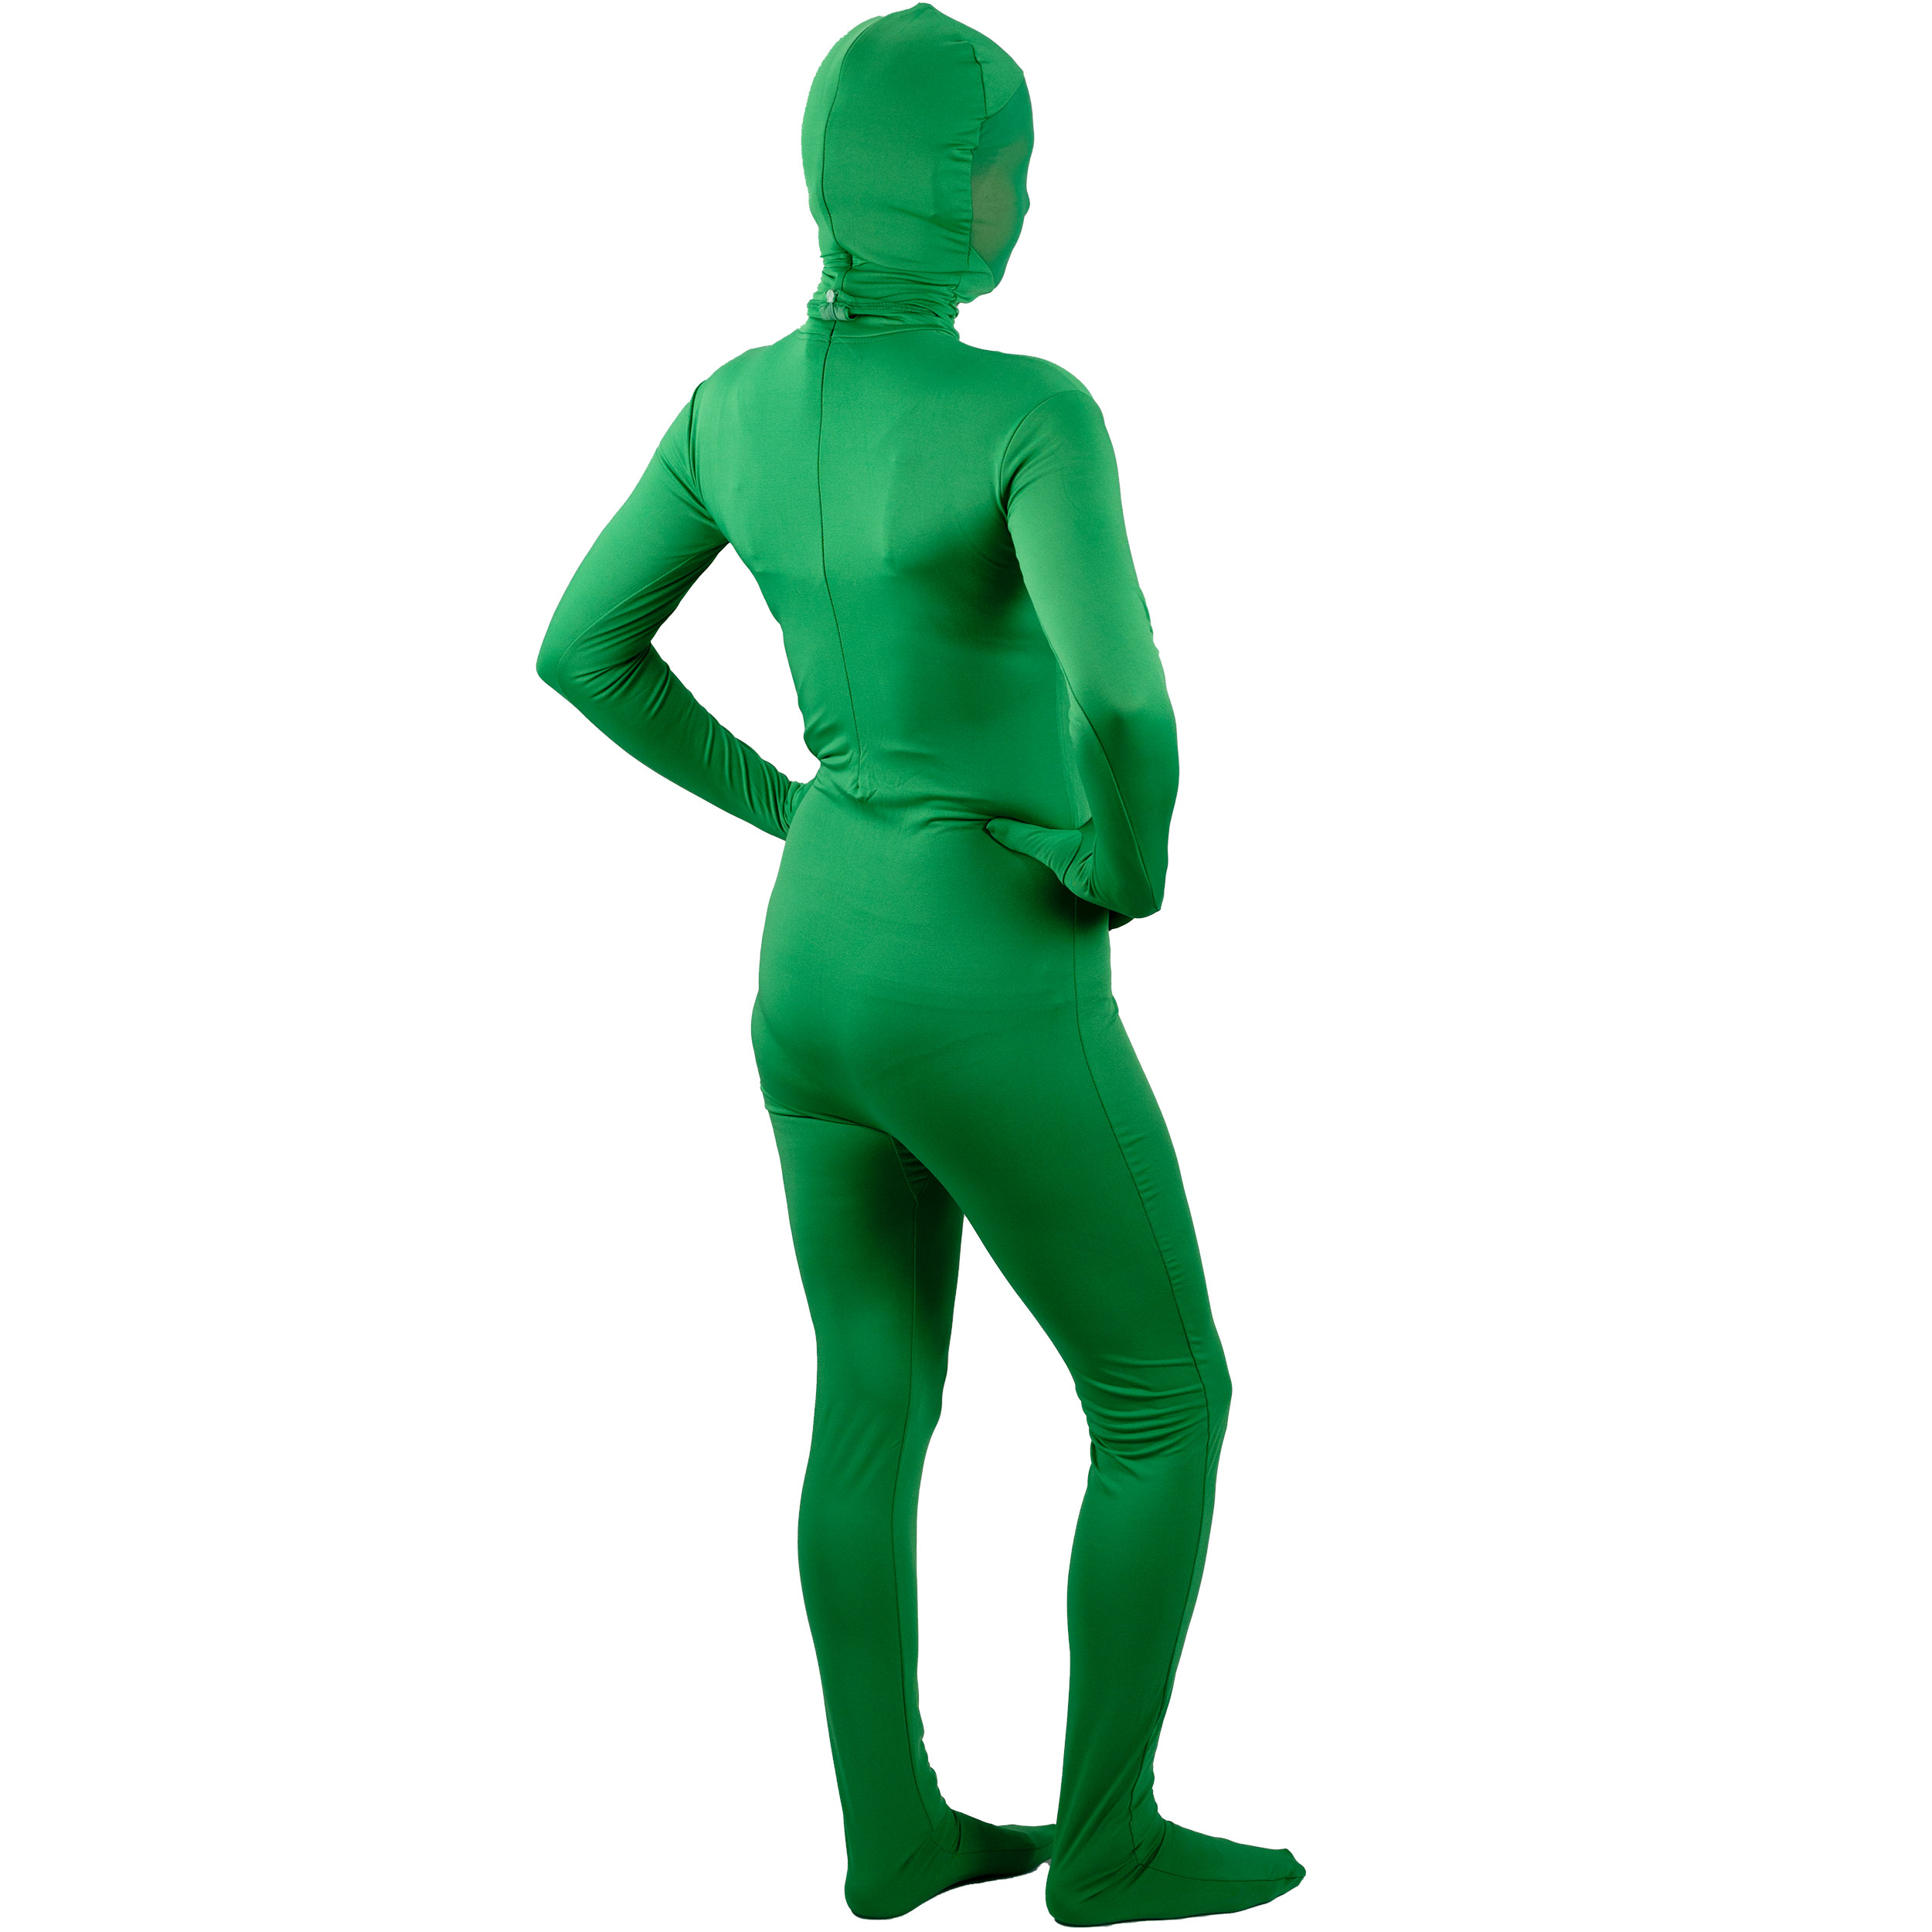 BRESSER BR-C2M zweiteiliger Chromakey grüner Anzug Größe: M